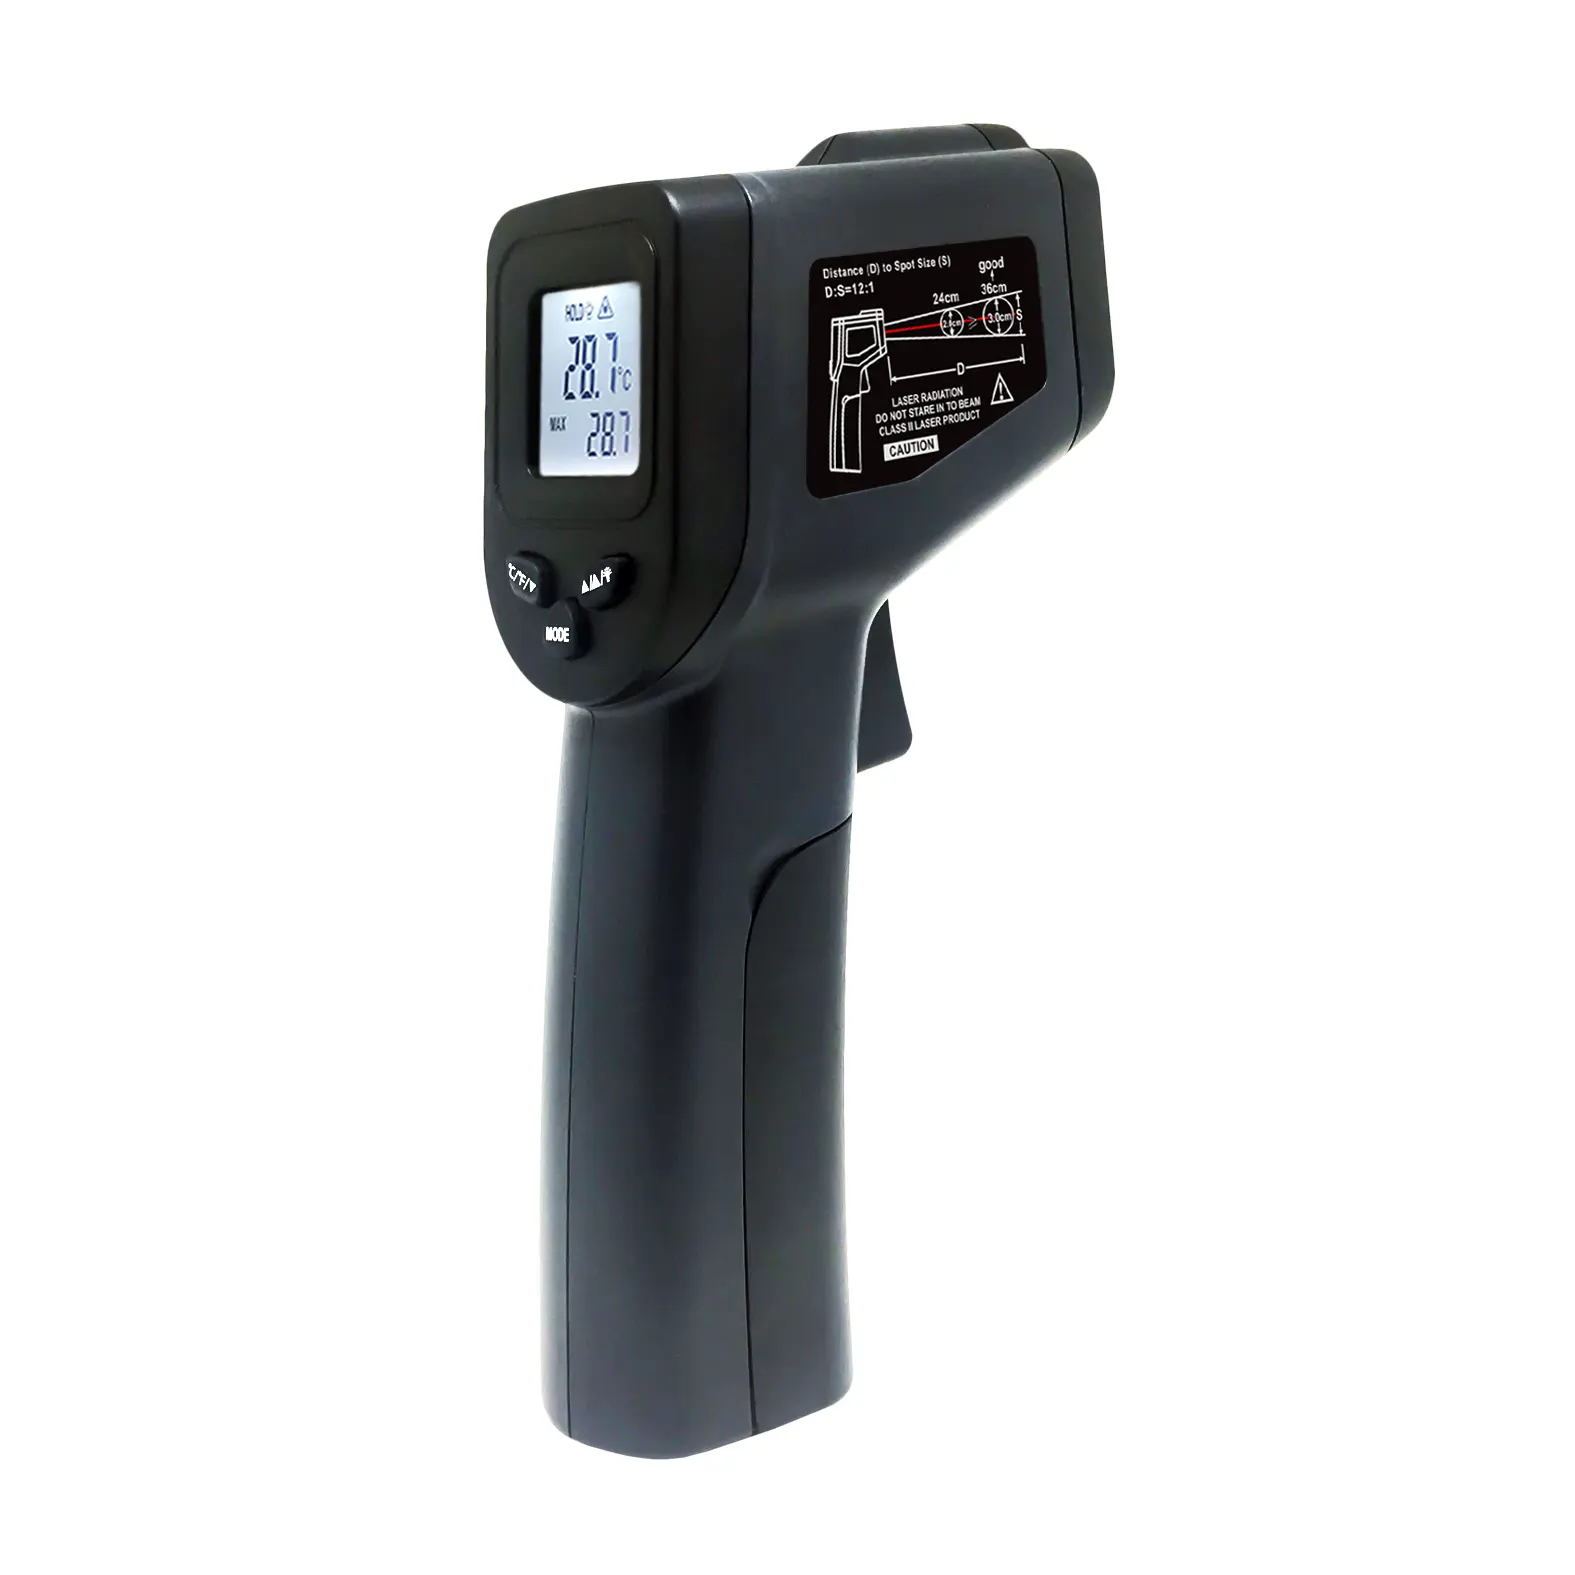 Pistola de escáner de alta temperatura Detector rápido de largo alcance baterías Incl termómetro infrarrojo Digital para la industria